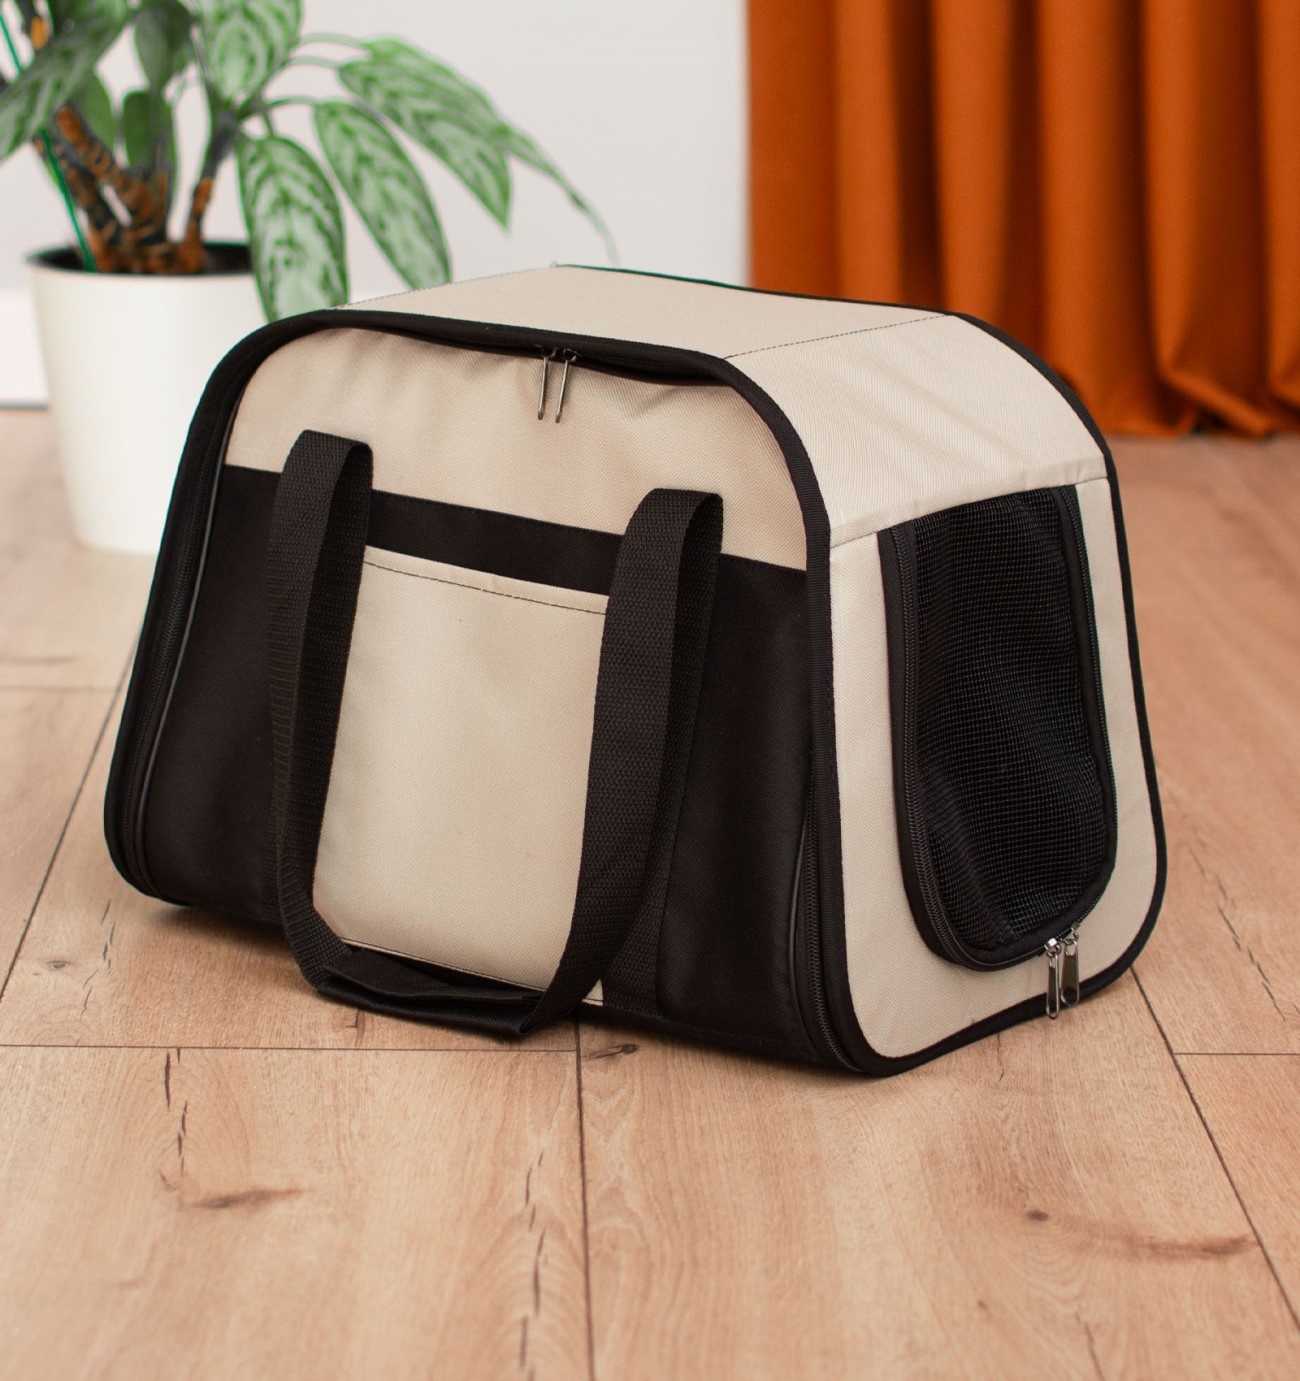 PETSHOP транспортировка PETSHOP транспортировка сумка-переноска Стив с карманом 42х25х27см (серый)